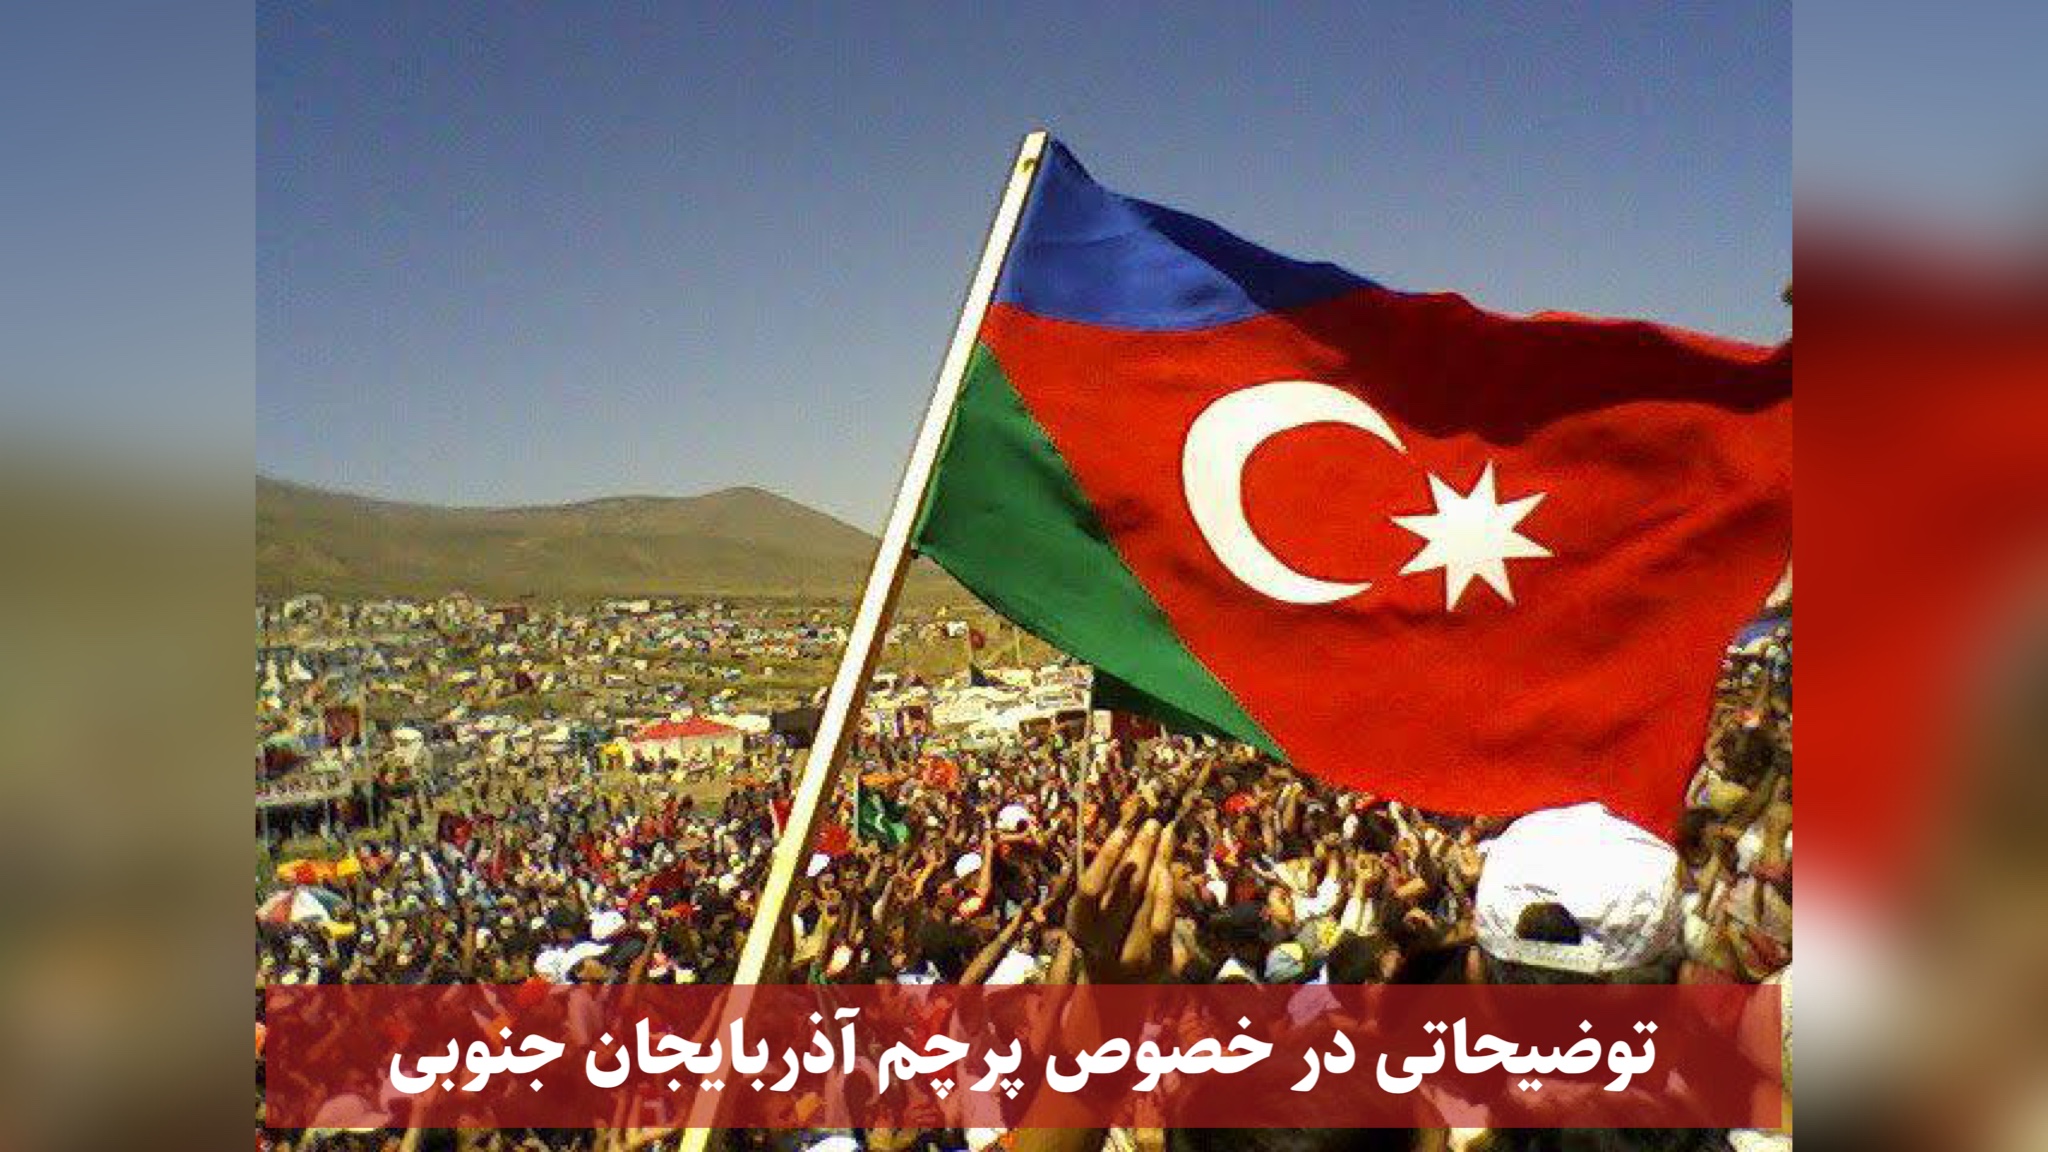 توضیحاتی در خصوص پرچم آذربایجان جنوبی